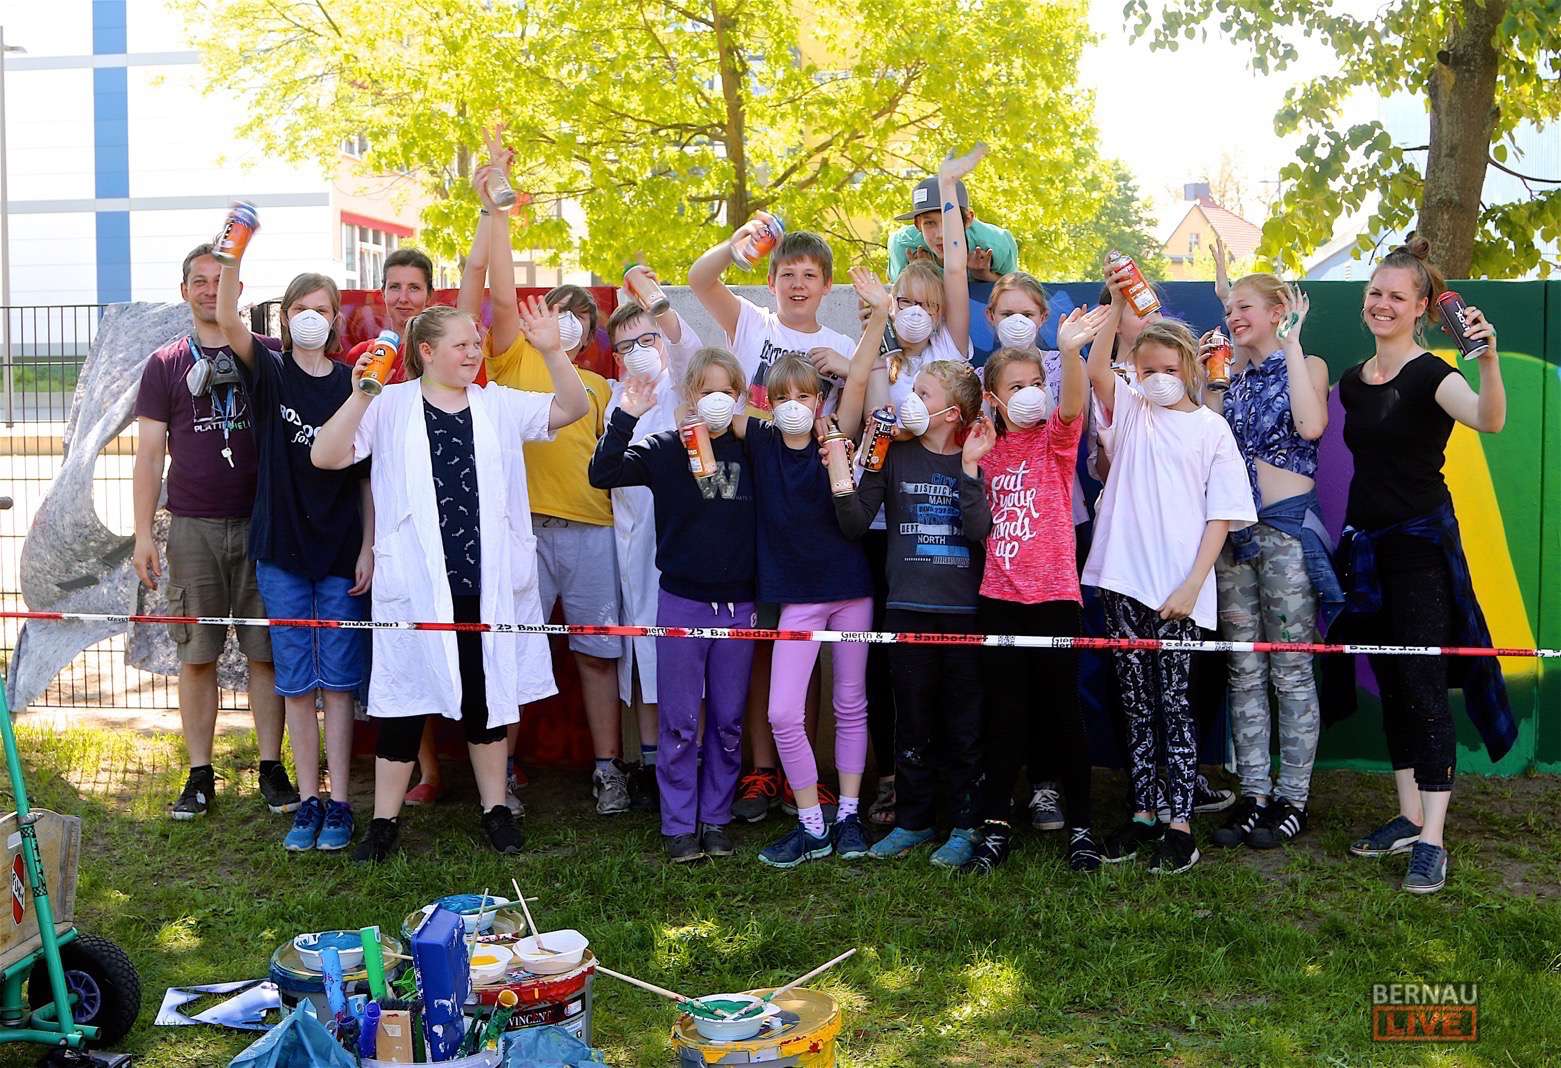 Bernau: 60 Liter Farbe, 50 Sprühdosen und 75 stolze SchülerInnen